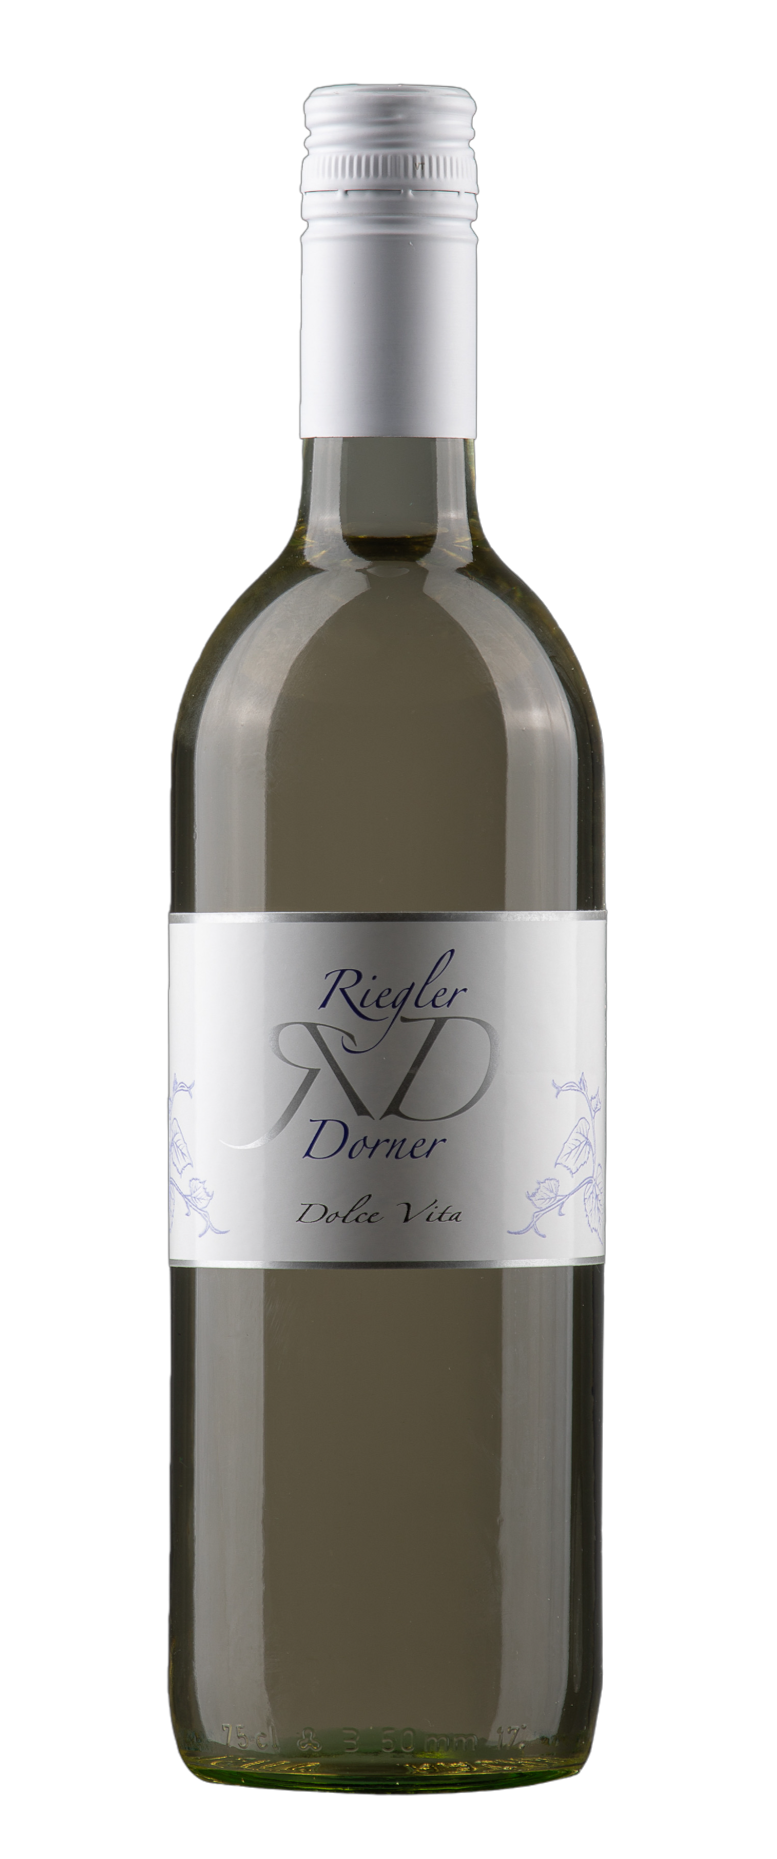 Weinbau Riegler-Dorner Produkt-Beispiele Dolce Vita